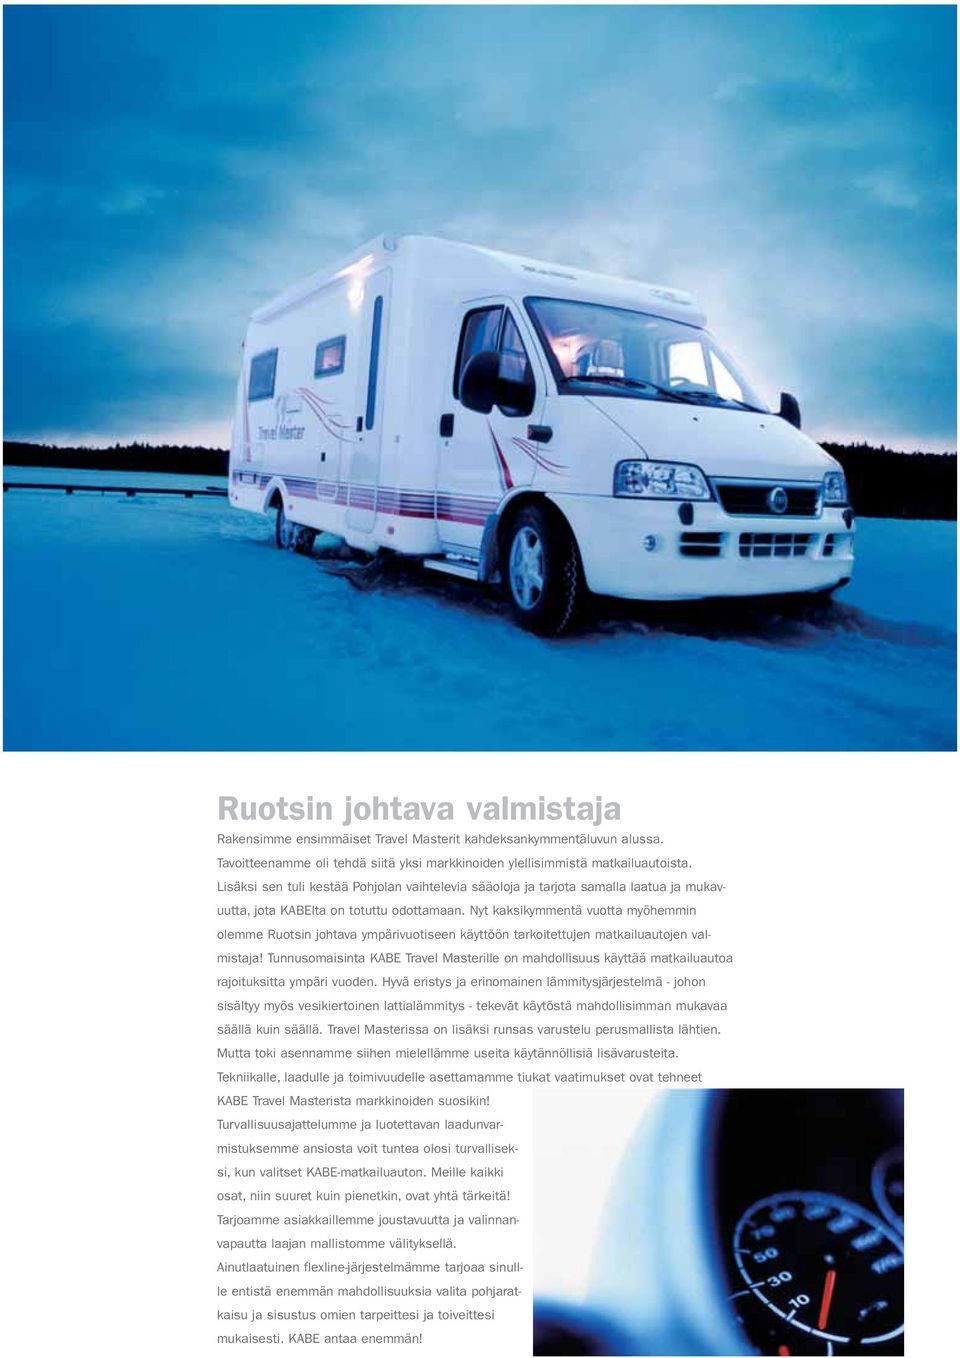 Nyt kaksikymmentä vuotta myöhemmin olemme Ruotsin johtava ympärivuotiseen käyttöön tarkoitettujen matkailuautojen valmistaja!